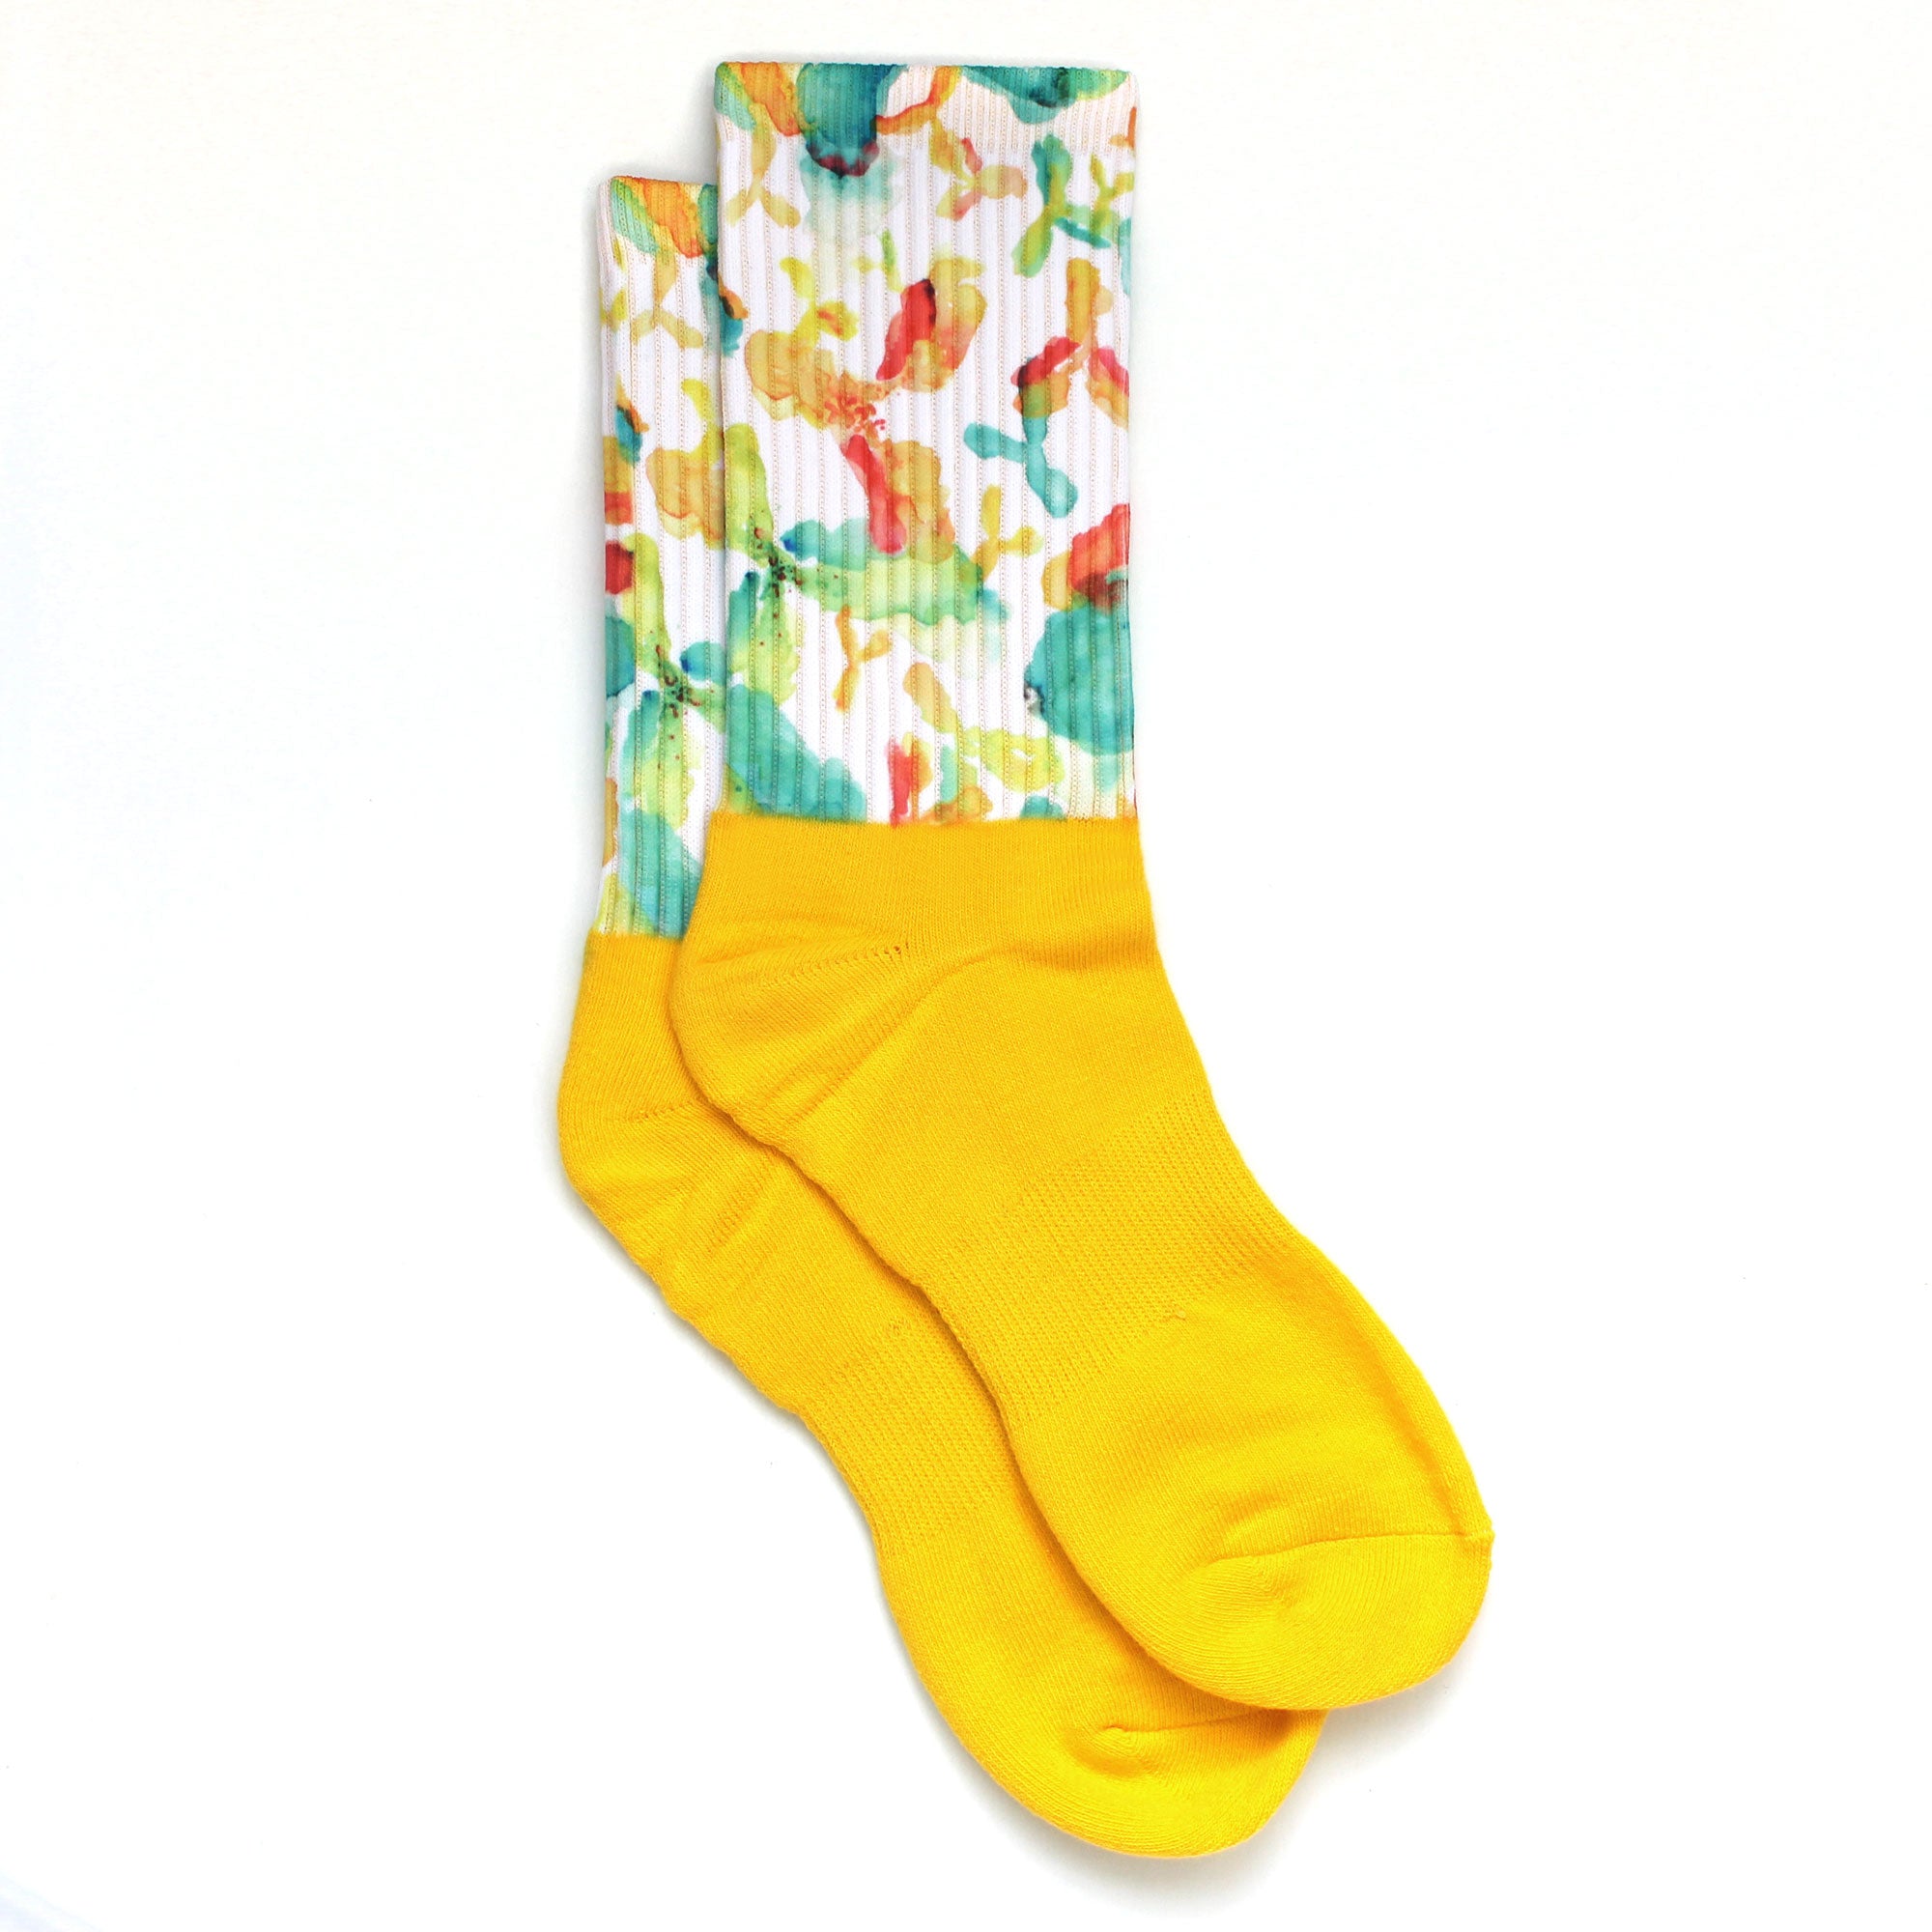 Antibody Anatomy Inspired Socks